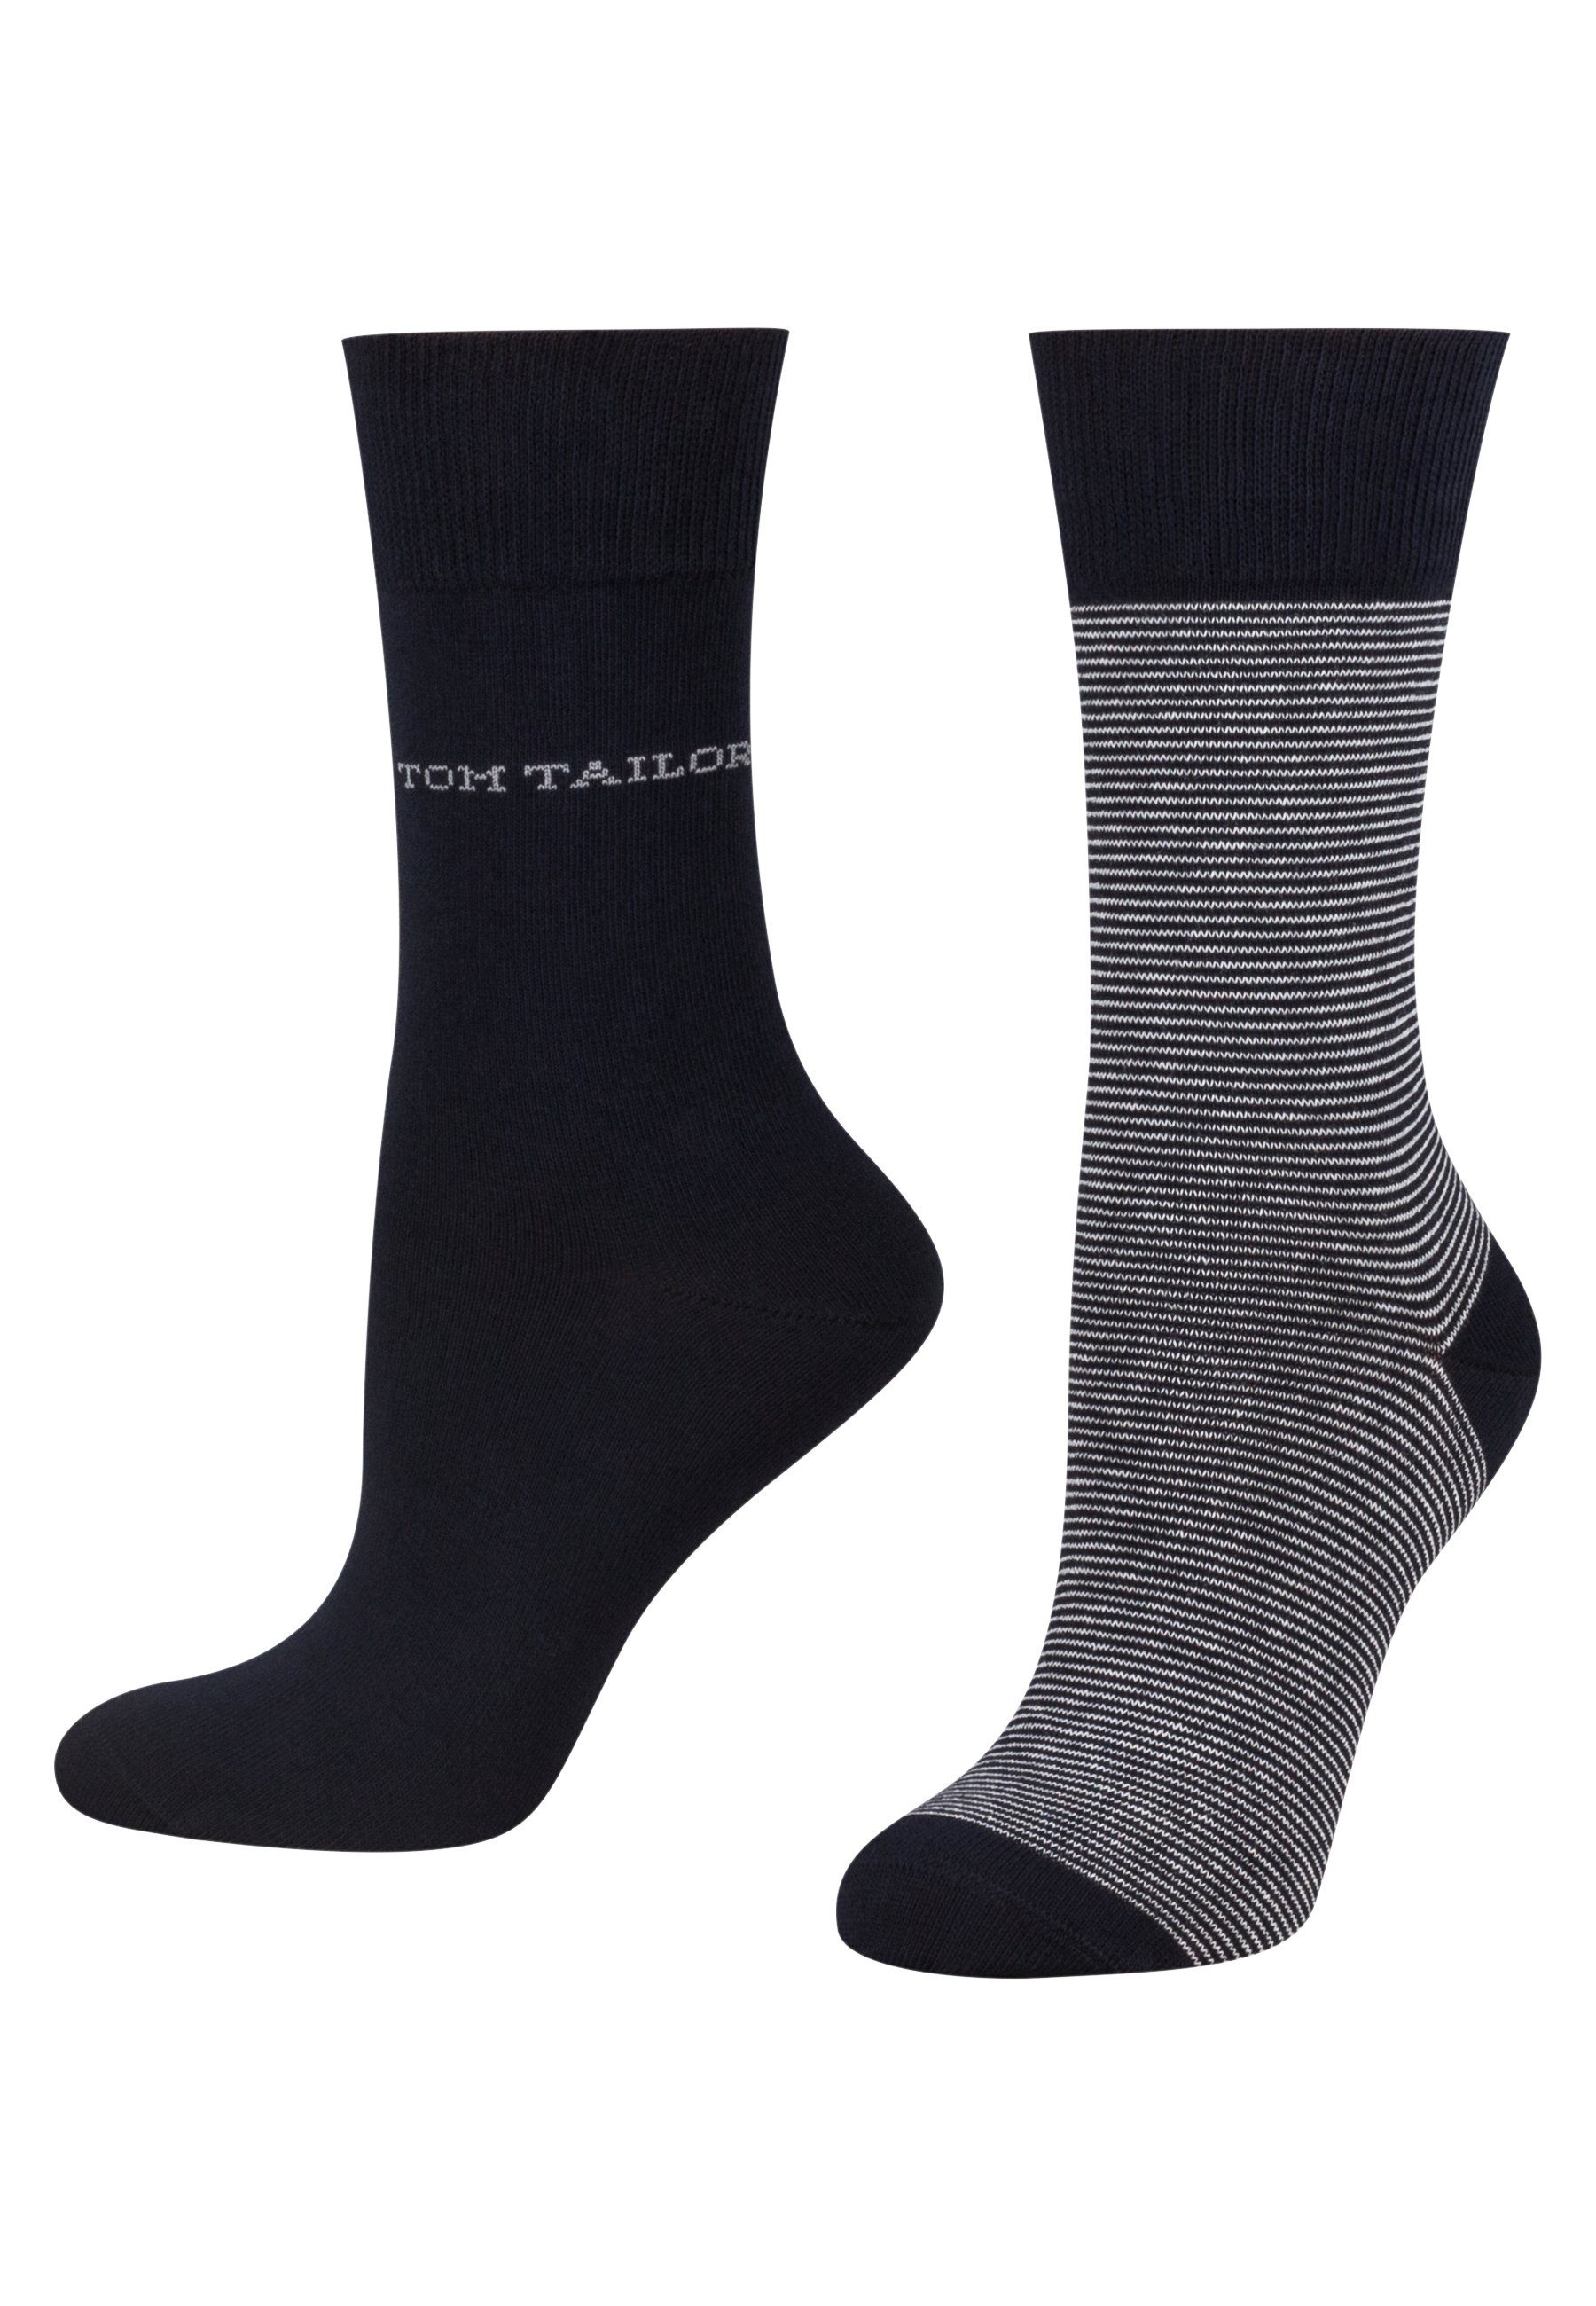 Socken 2er Tailor Tom TOM basic women navy socks stripe TAILOR 9521545042